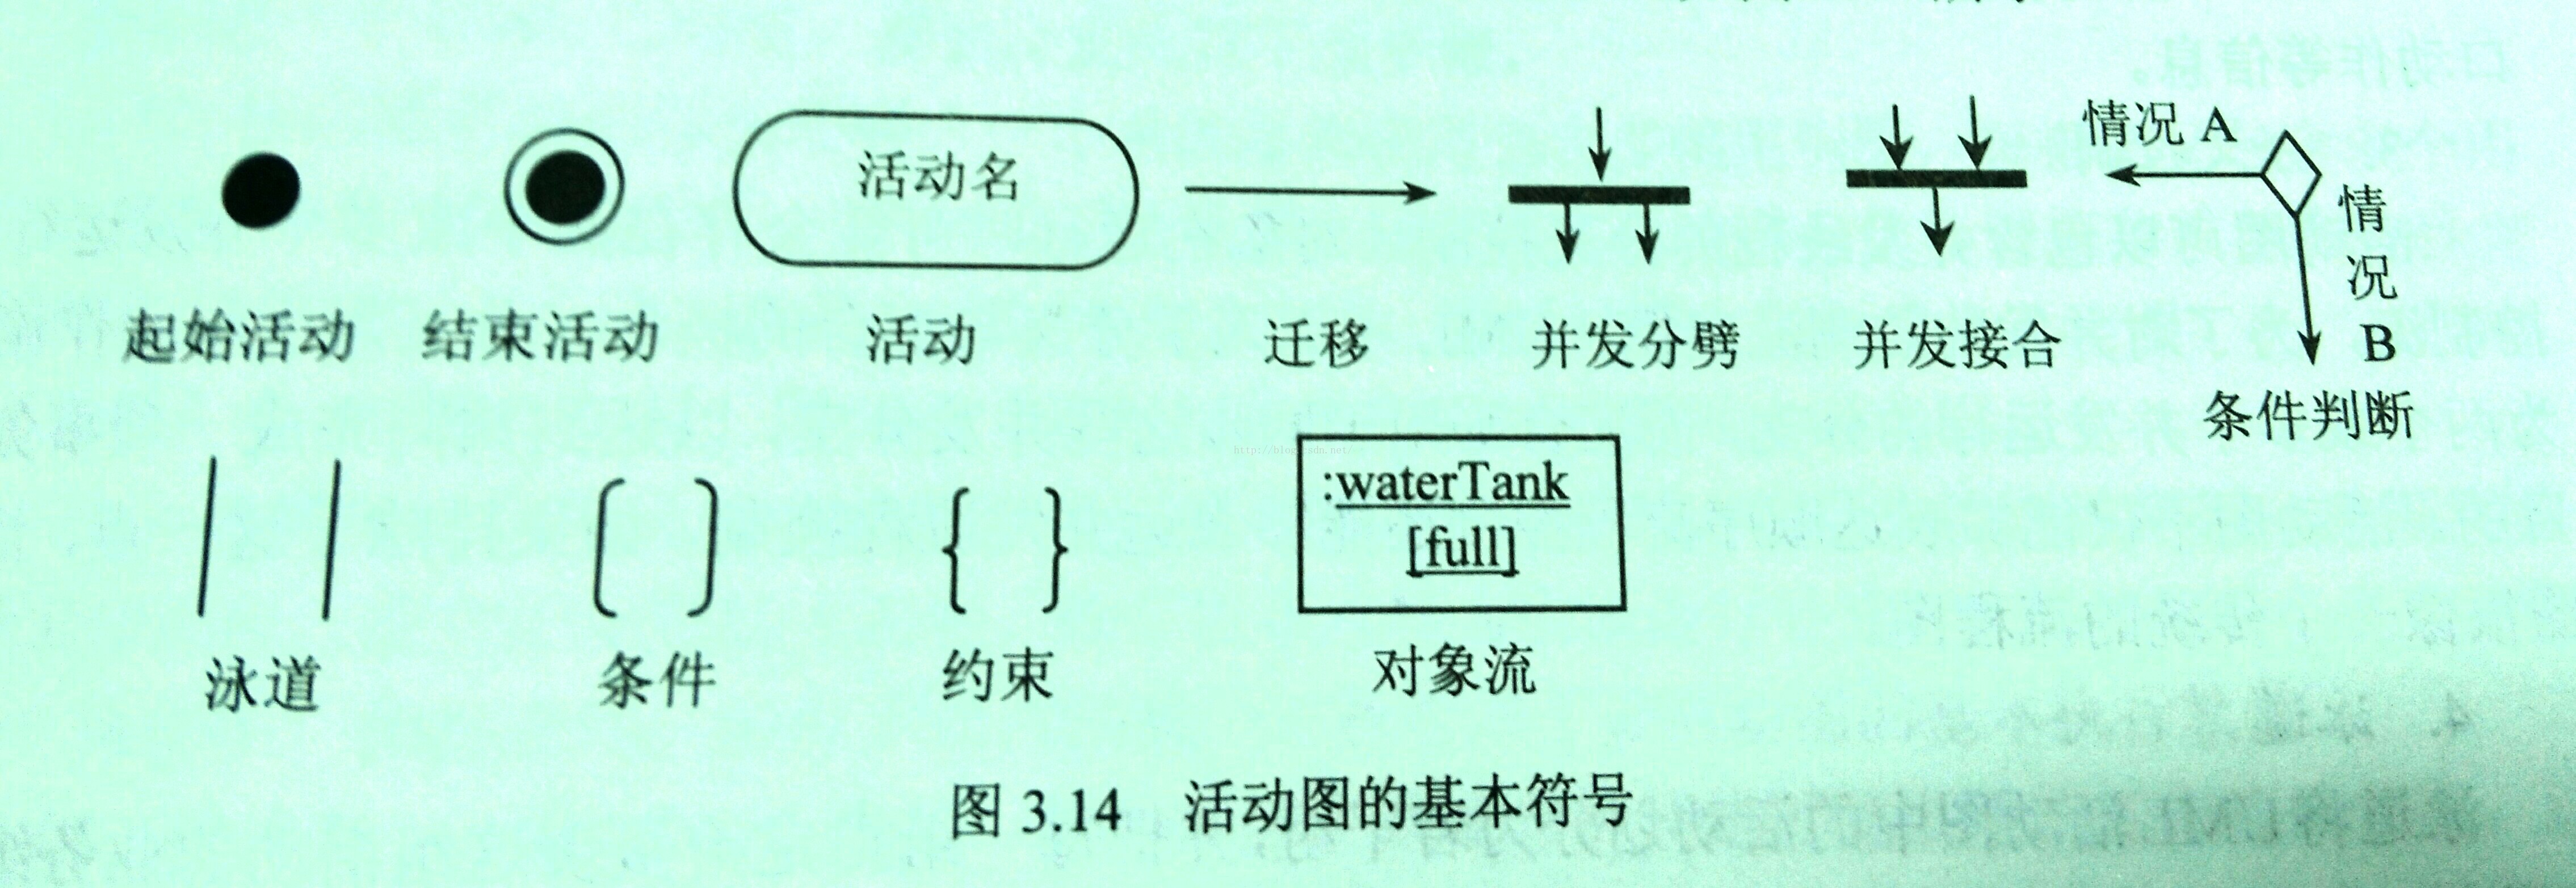 计算机生成了可选文字:0 起 始 活 动 泳 道 结 束 活 动 条 件 活 动 约 束 图 3 彐 4 迁 移 并 发 分 劈 并 发 接 合 情 况 A 况 B 条 件 判 断 :waterTank 对 象 流 活 动 图 的 基 本 符 号 